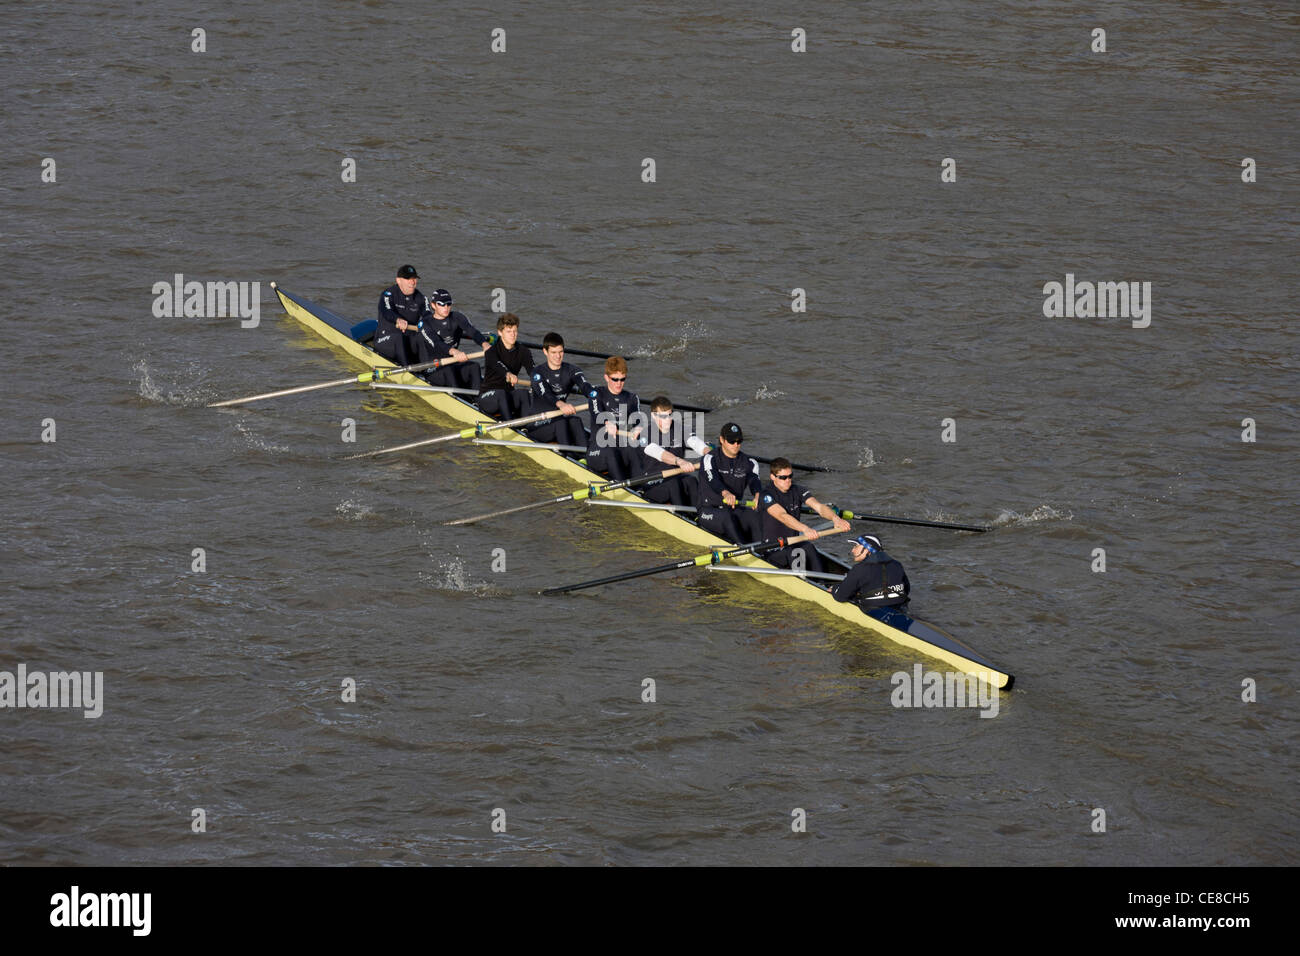 Un bateau de l'équipe d'aviron de l'Université d'Oxford arrondit la courbe de la Tamise à Putney, ouest de Londres lors d'une session de formation. Banque D'Images